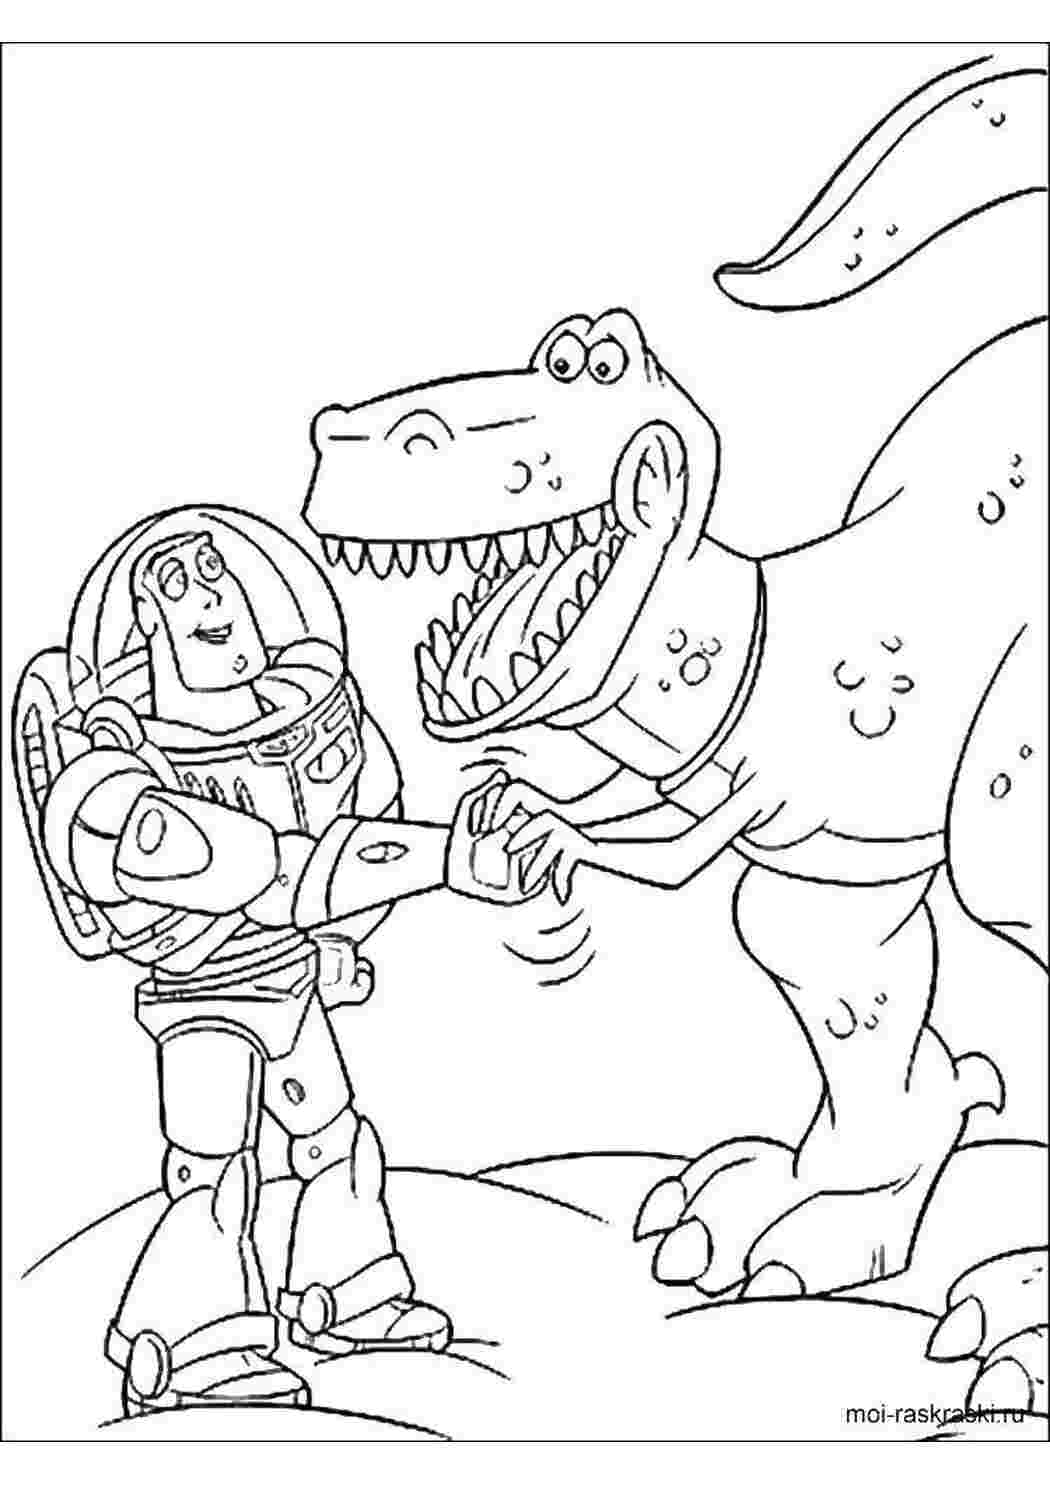 Раскраски Базз лайтер и динозавр рекс история игрушек Базз Лайтер, игрушки